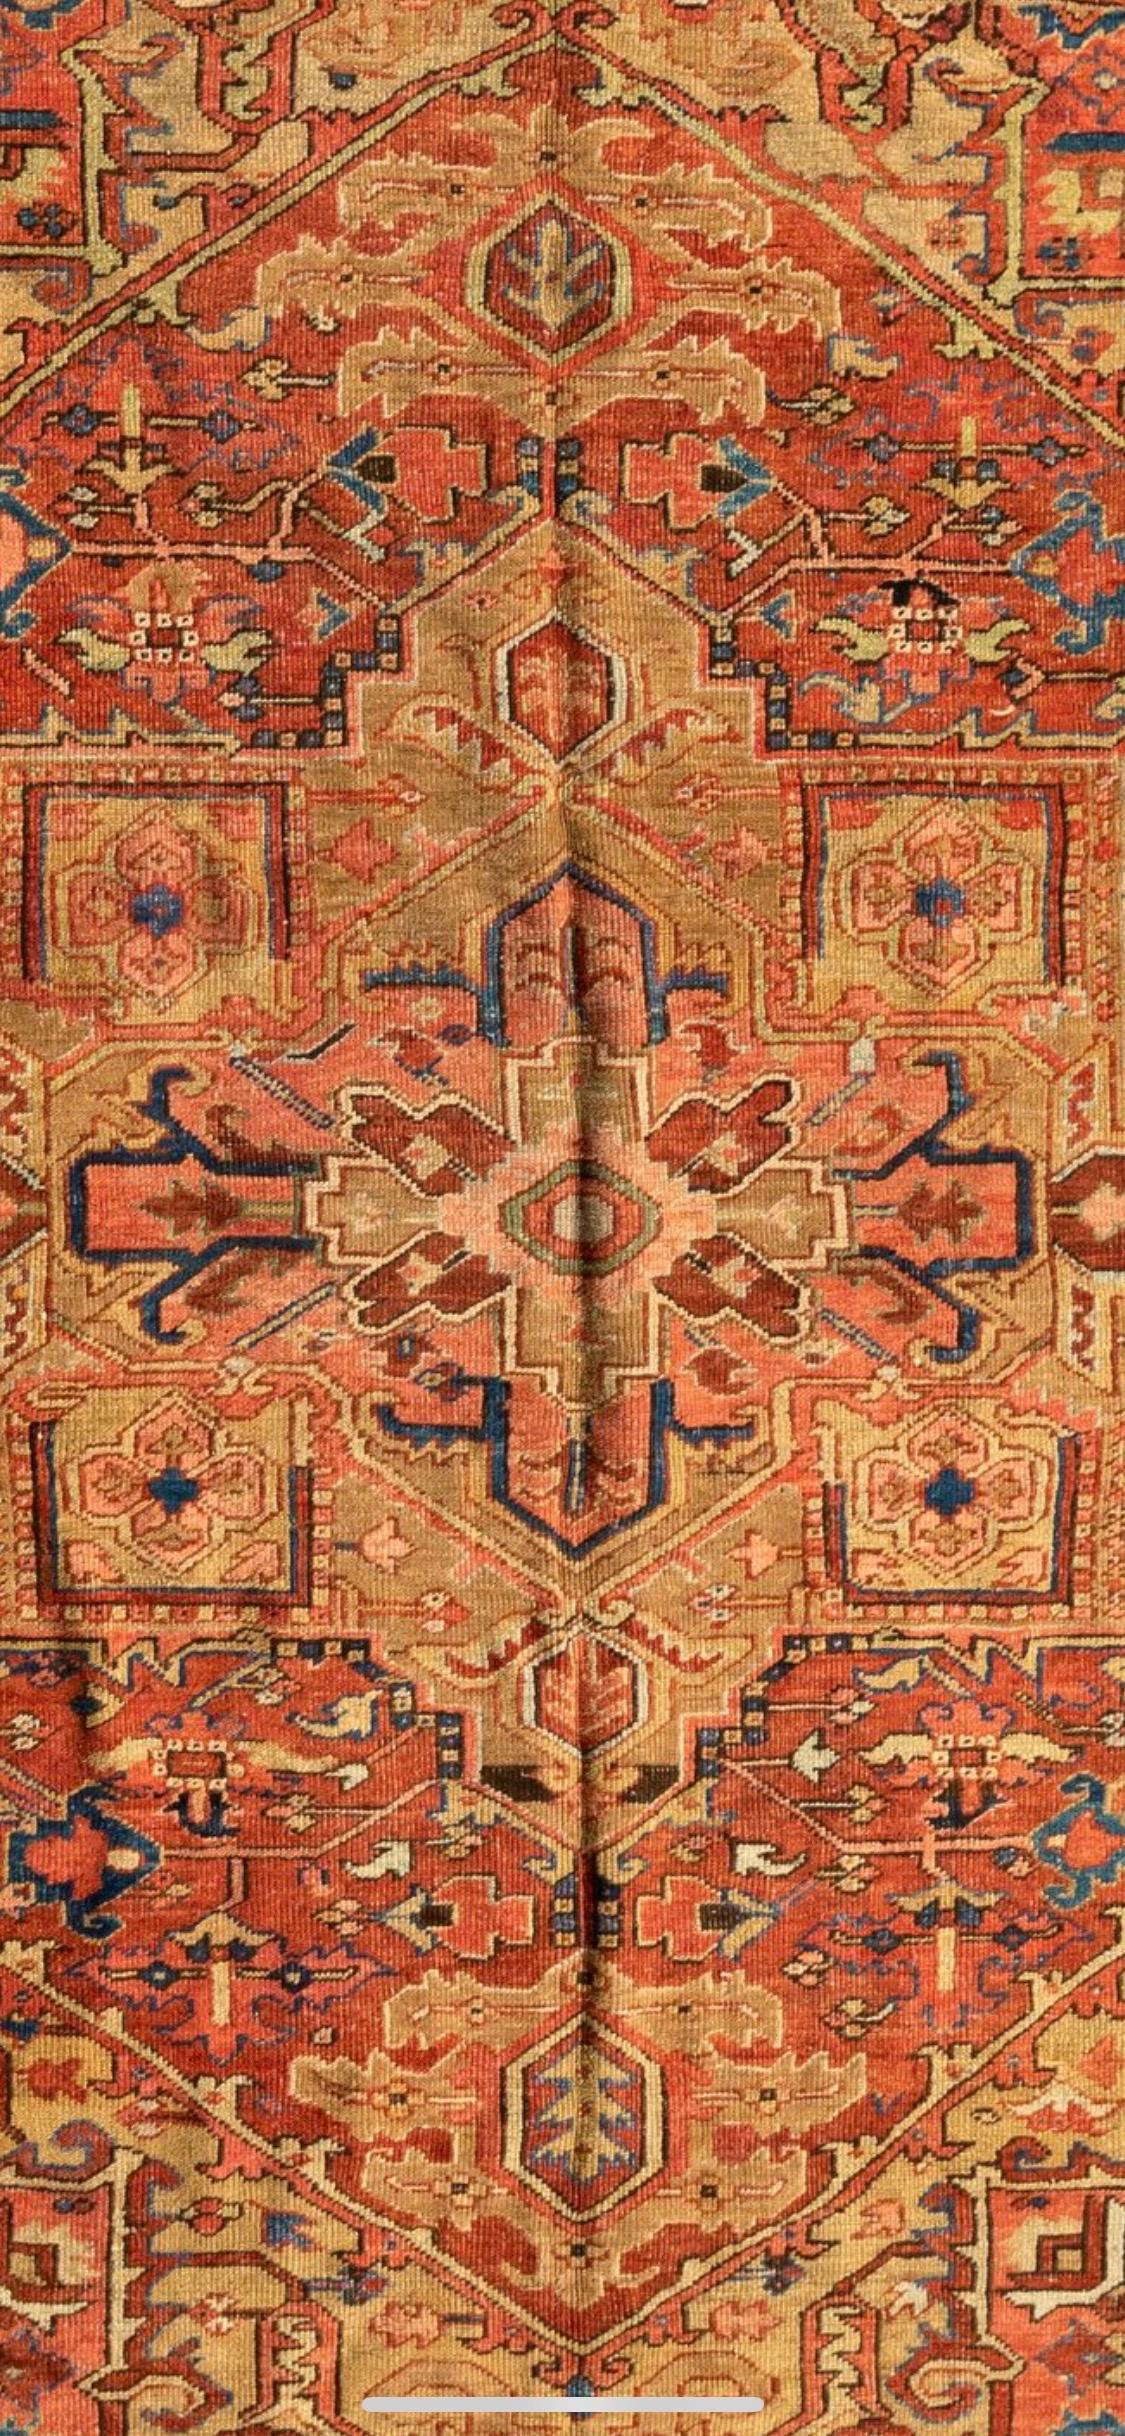 Heriz-Teppiche gehören zu den berühmtesten Teppichen aus dem Iran, da sie einen einzigartigen und unverwechselbaren Stil haben. Heriz ist eine Stadt im Nordwesten Irans, in der Nähe der Stadt Tabriz, die ein wichtiges Zentrum der Teppichweberei im